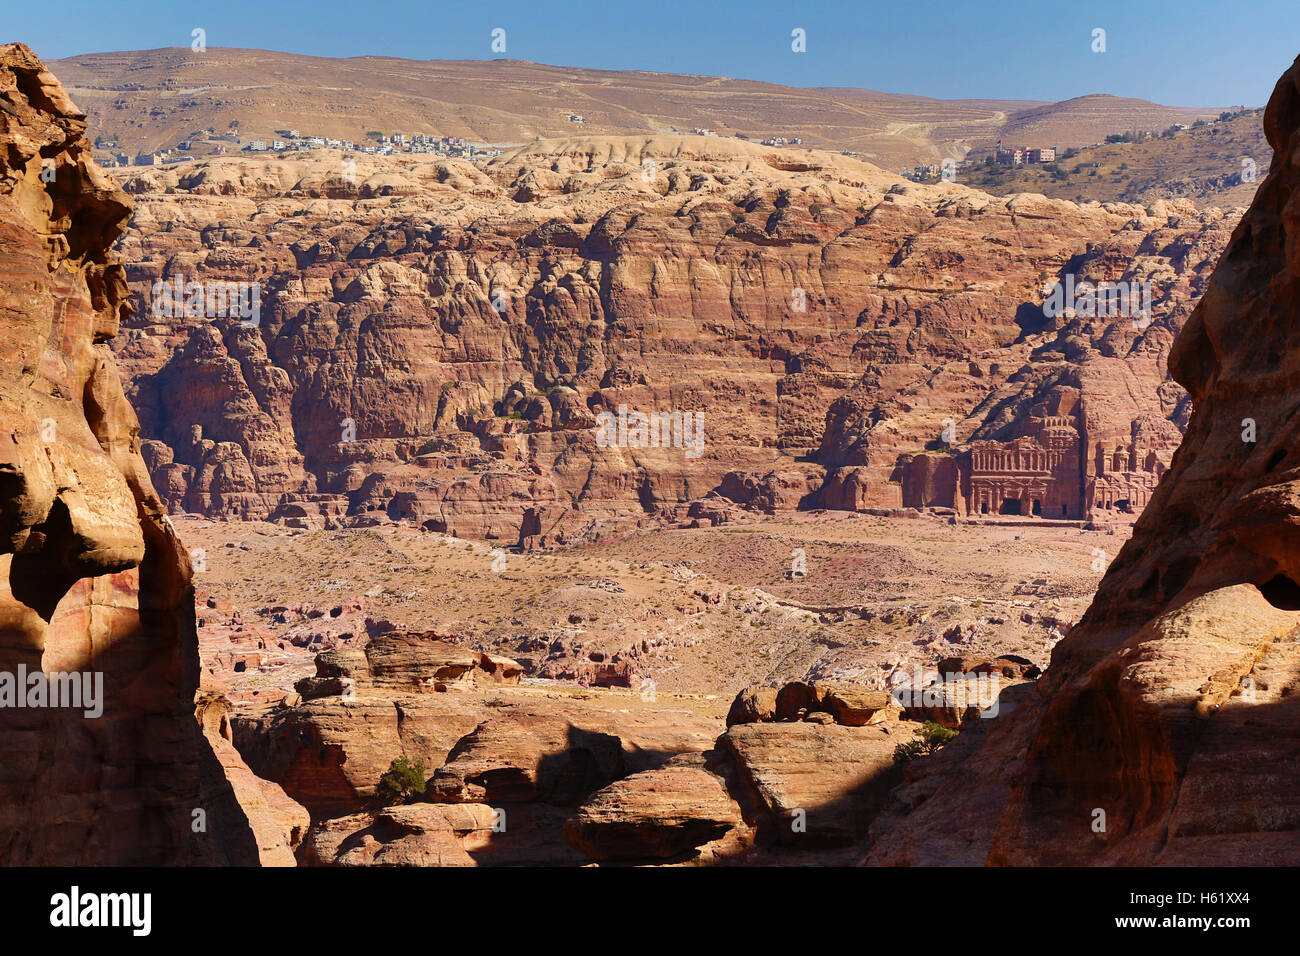 Tumbas en las rocas de piedra arenisca alrededor del valle de rock en la ciudad de Petra, Jordania Foto de stock